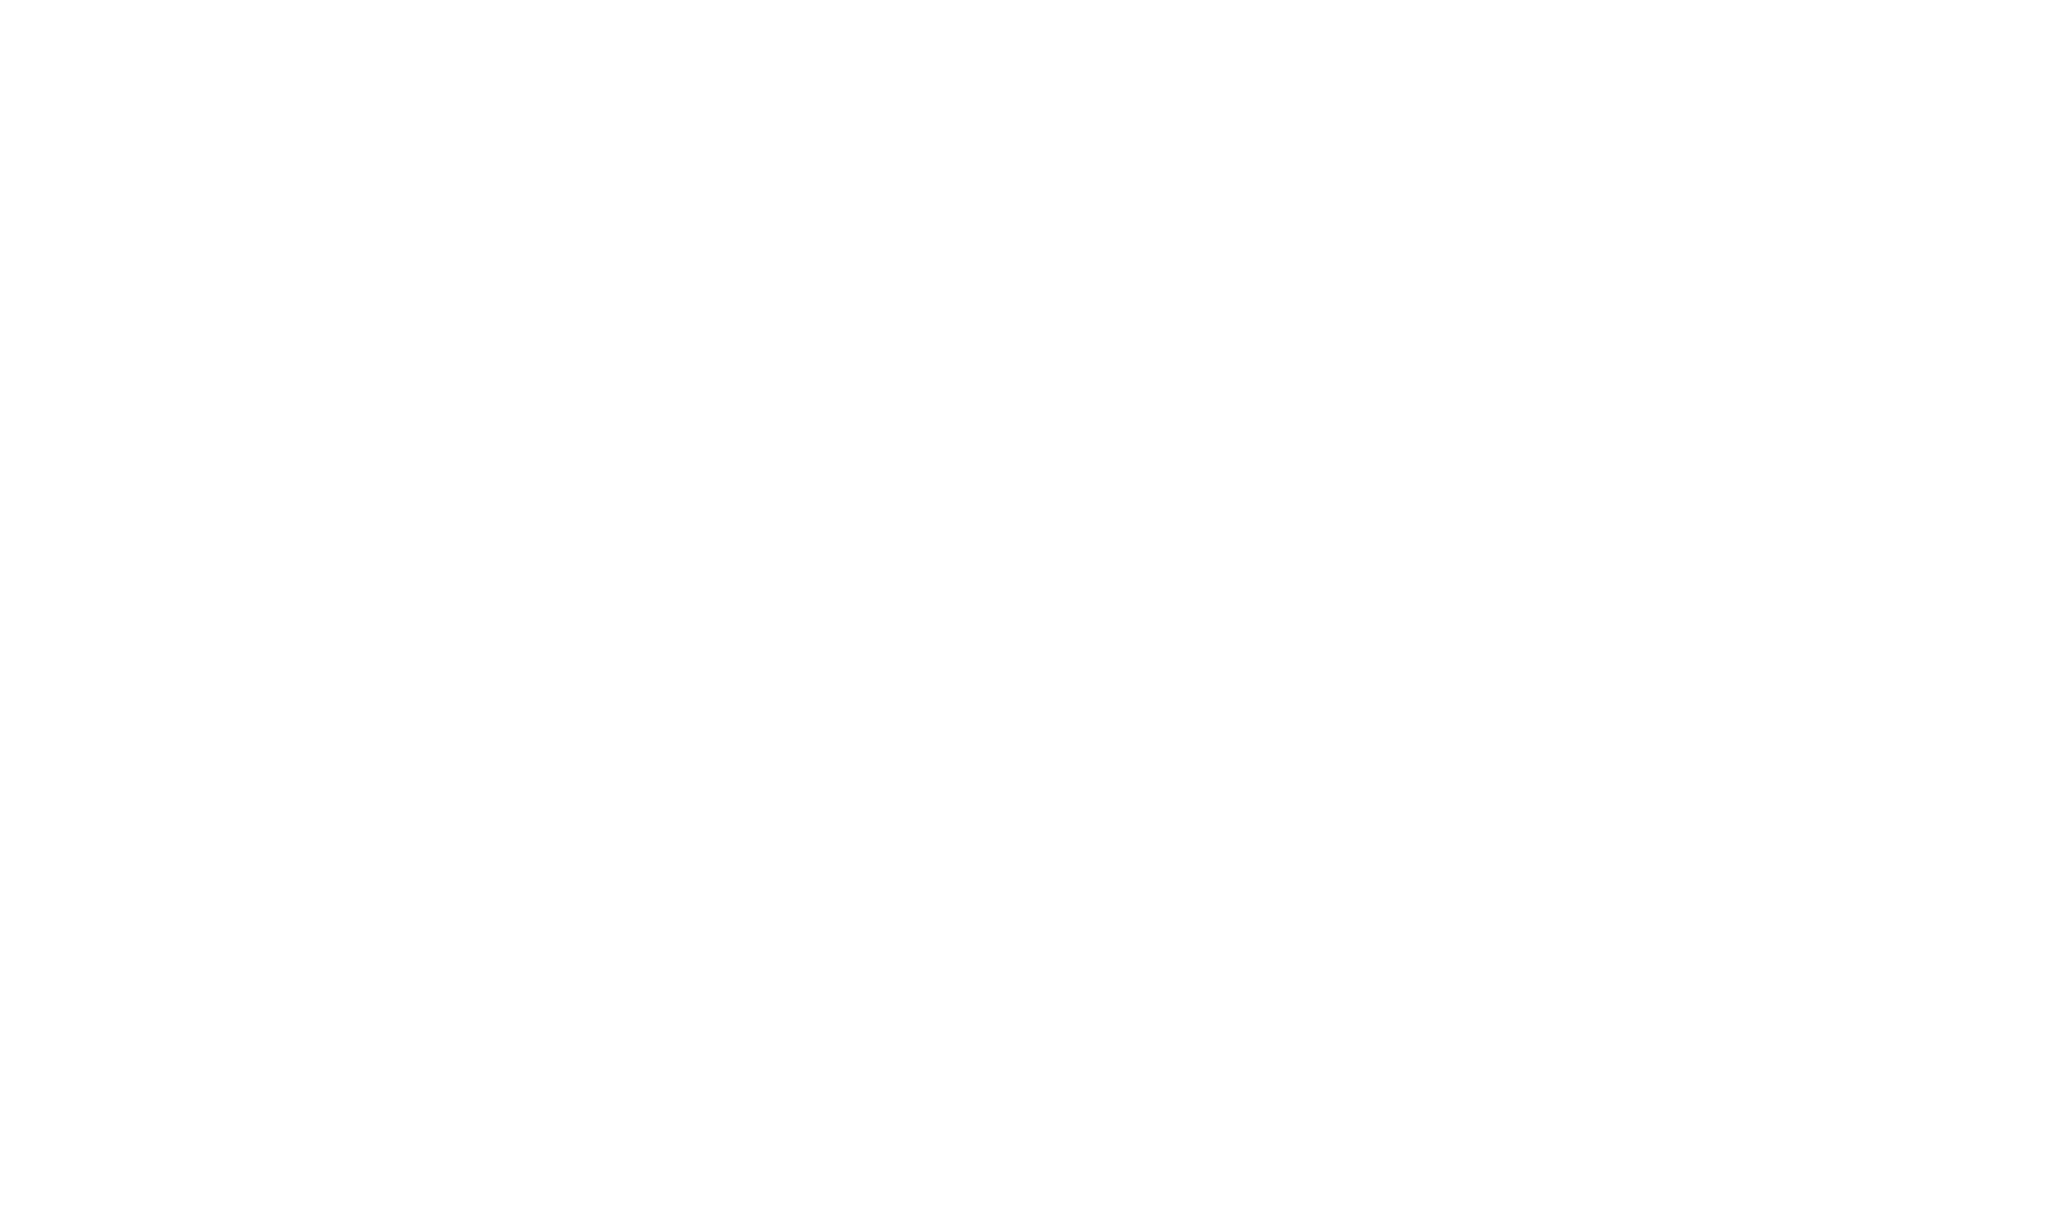 La Rambla logotipo